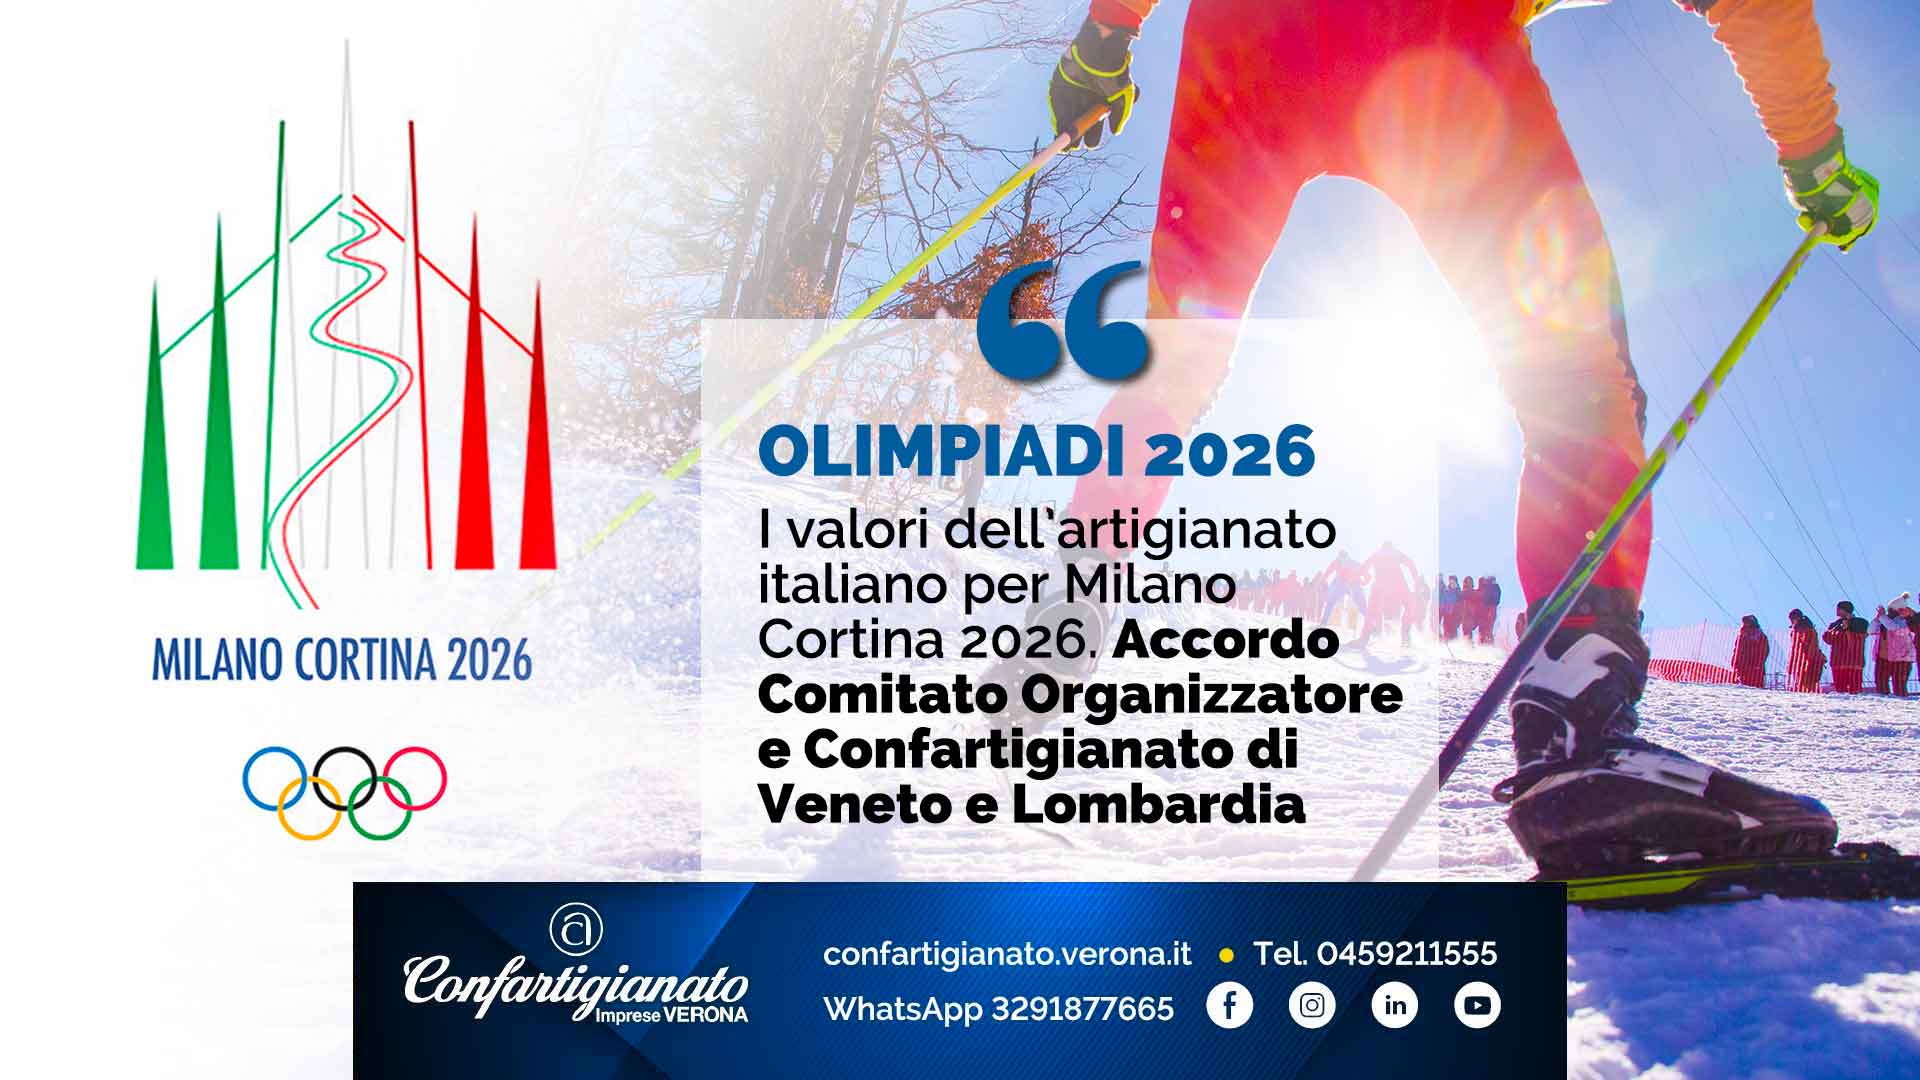 OLIMPIADI 2026 – I valori dell’artigianato italiano per Milano Cortina 2026. Accordo Comitato Organizzatore e Confartigianato di Veneto e Lombardia